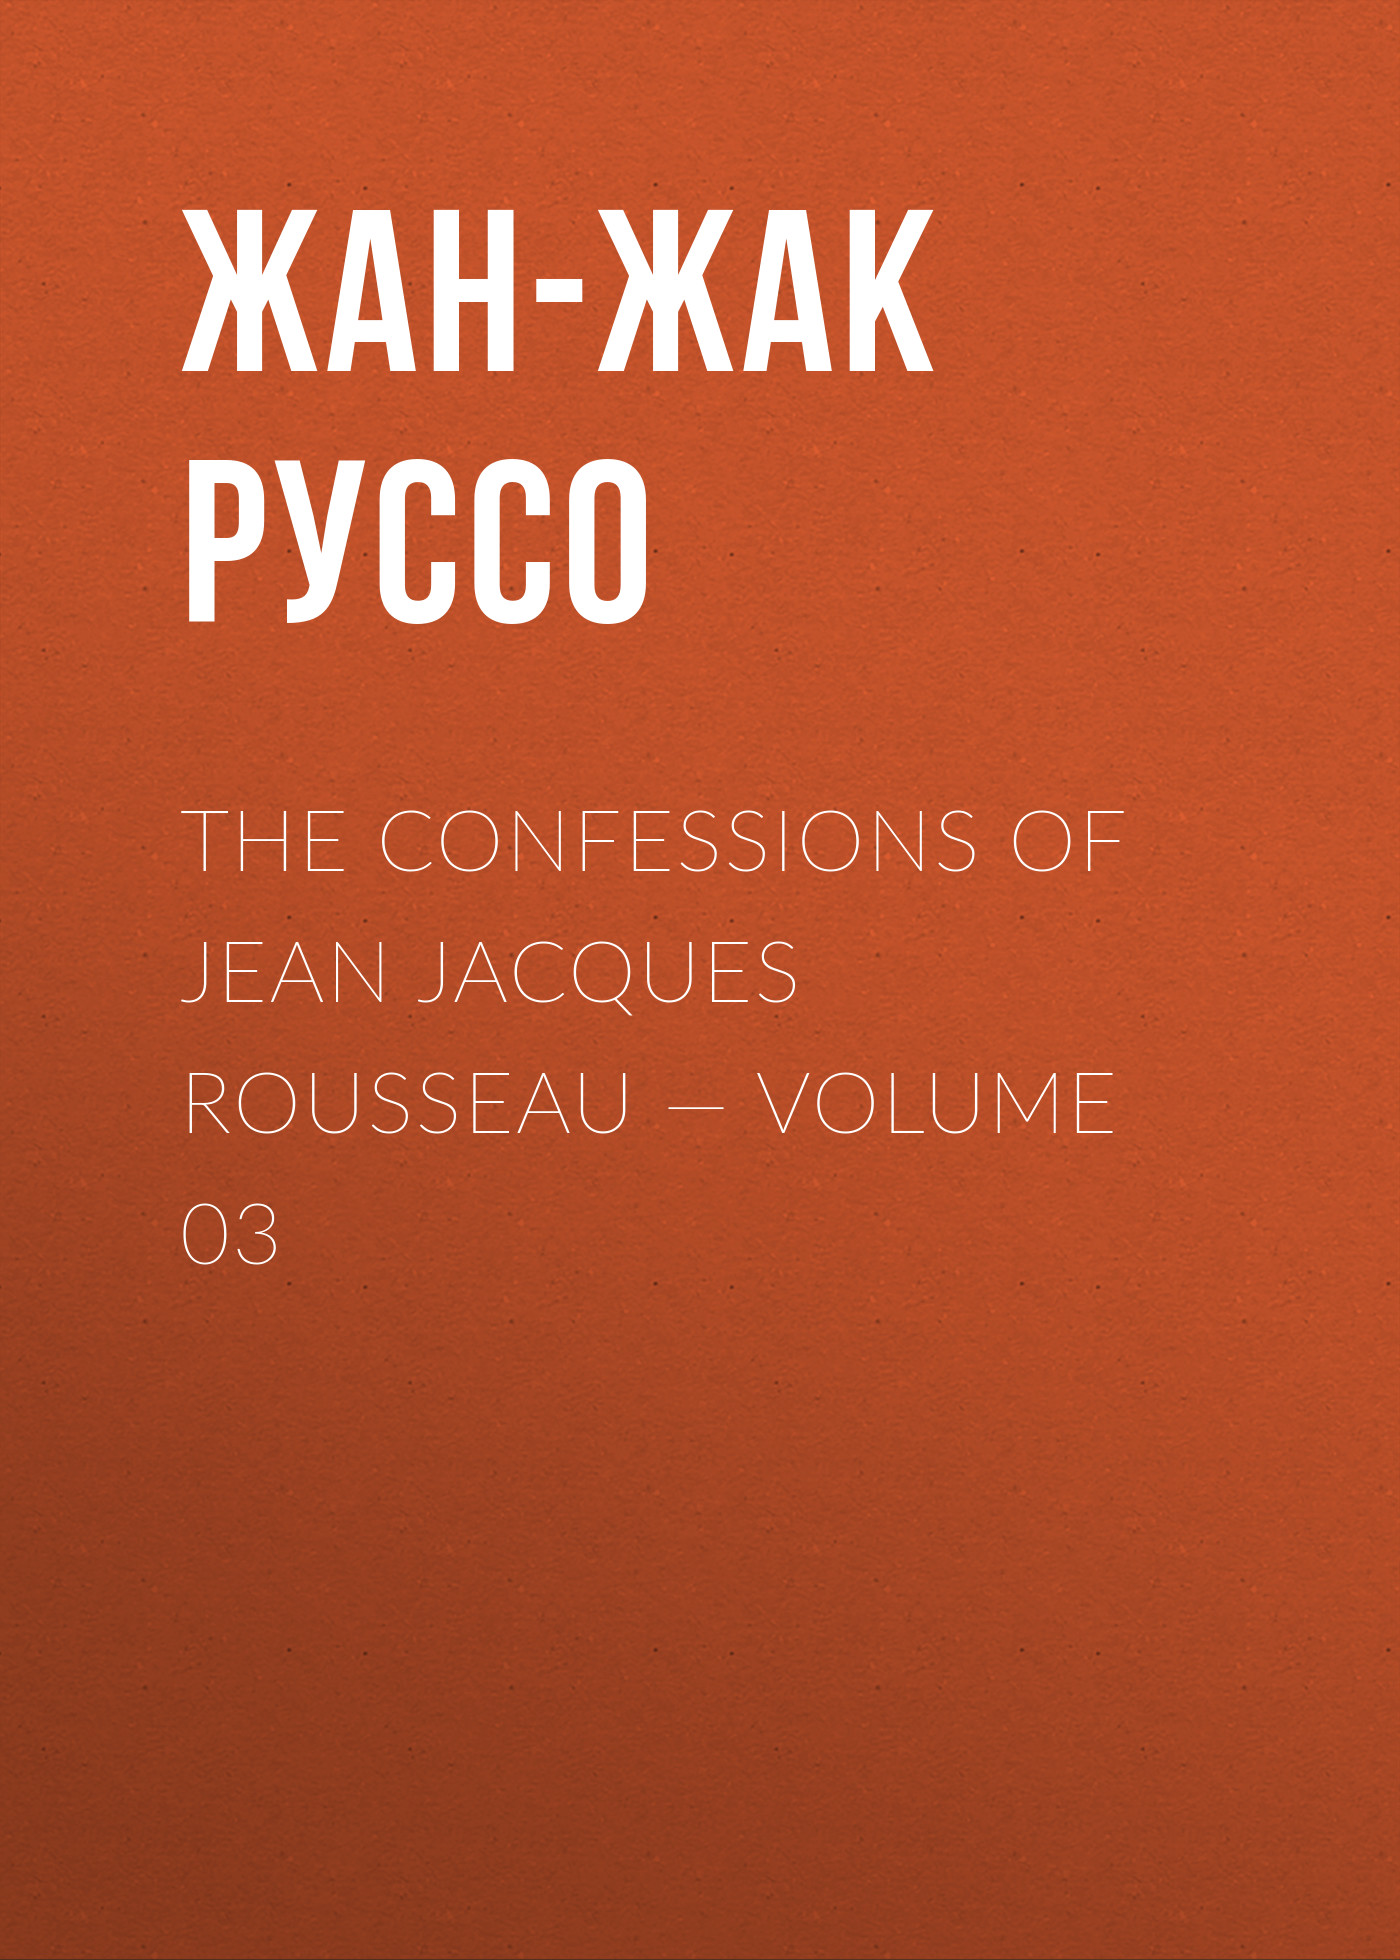 Книга The Confessions of Jean Jacques Rousseau – Volume 03 из серии , созданная Жан-Жак Руссо, может относится к жанру Биографии и Мемуары, Литература 18 века, Зарубежная старинная литература. Стоимость электронной книги The Confessions of Jean Jacques Rousseau – Volume 03 с идентификатором 34840254 составляет 0 руб.